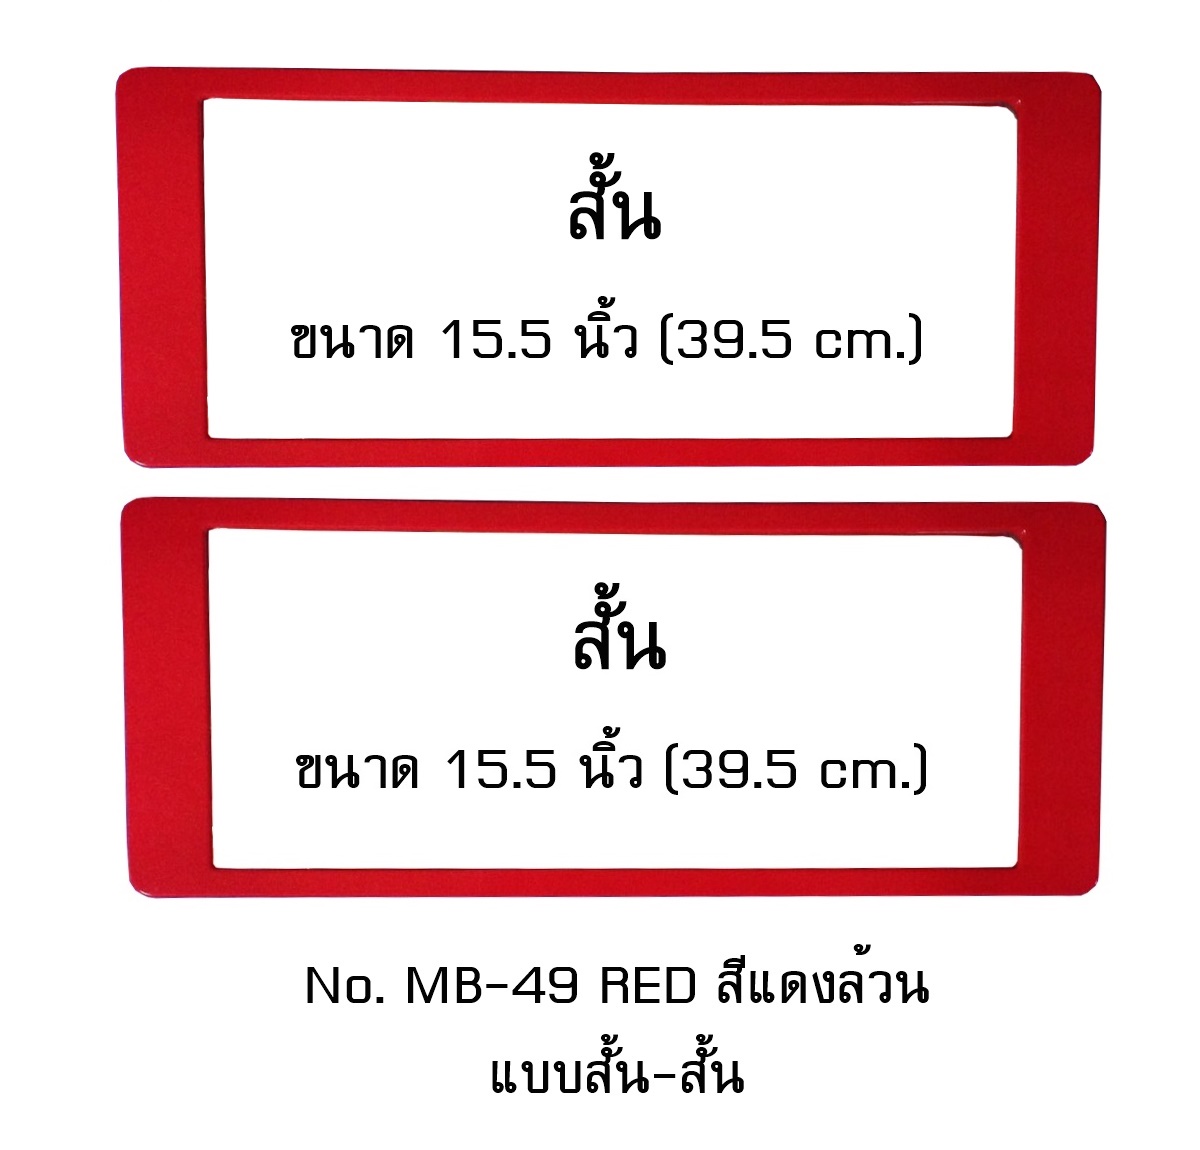 กรอบป้ายทะเบียน กันน้ำ MB-49 RED สีแดงล้วน แบบสั้น-สั้น ระบบคลิปล็อค 8 จุด พร้อมน็อตอะไหล่